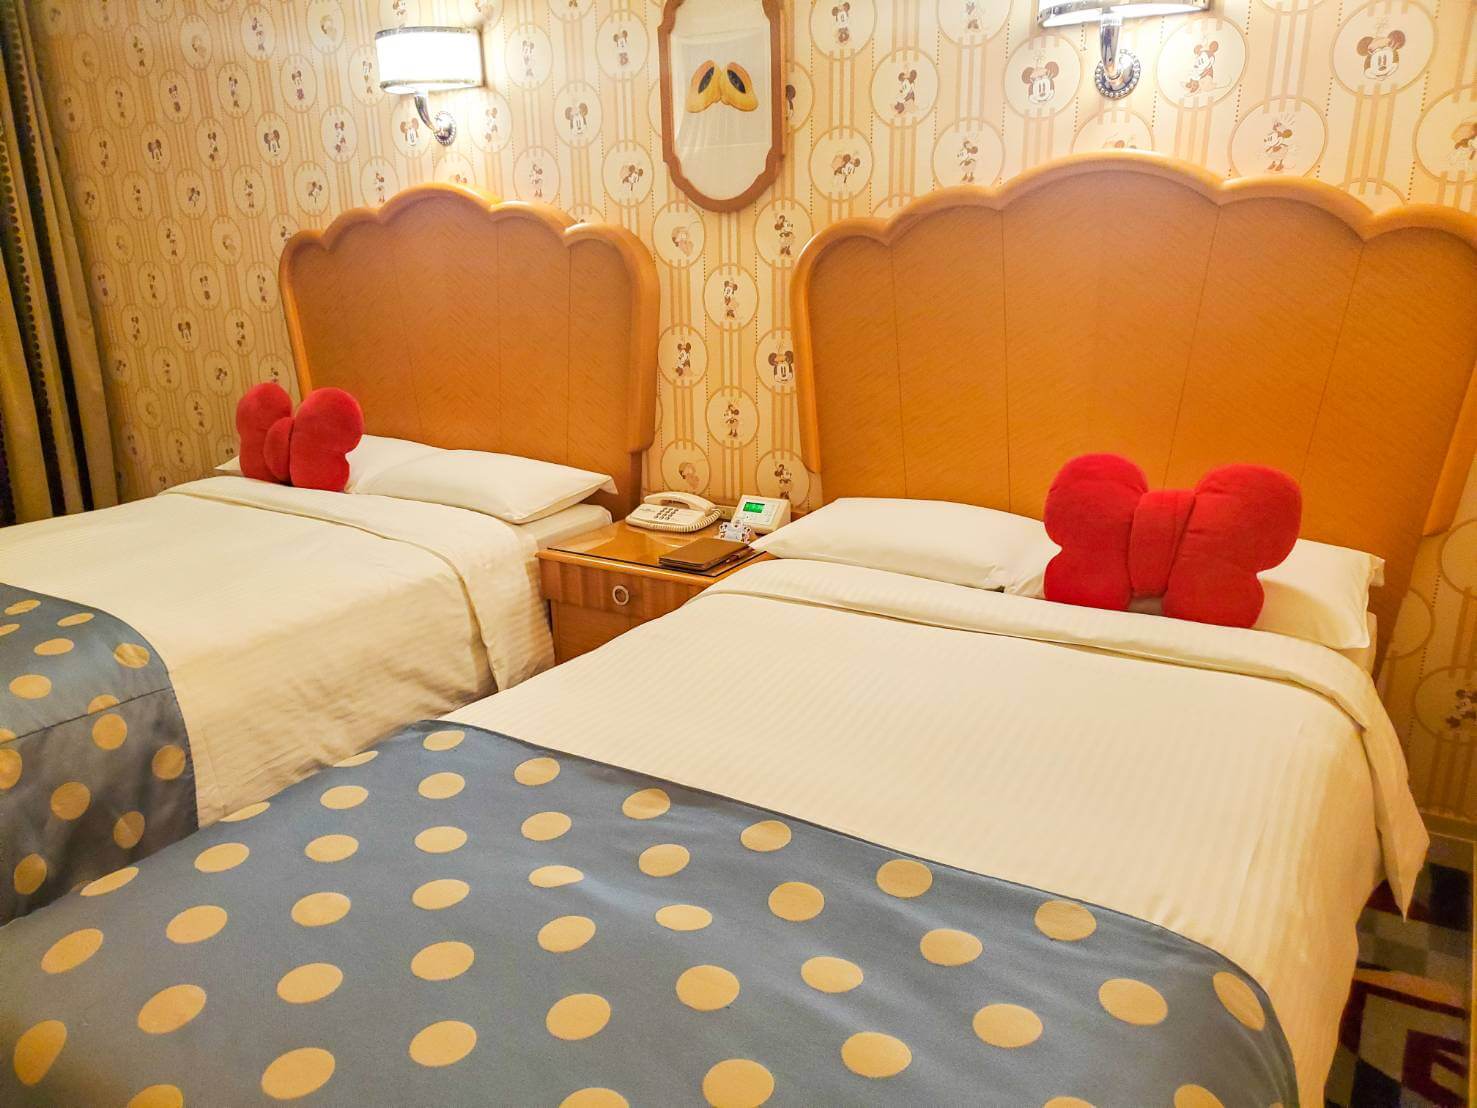 ディズニーアンバサダーホテル『ミニーマウスルーム』に宿泊!ミニーらしい可愛い客室!!